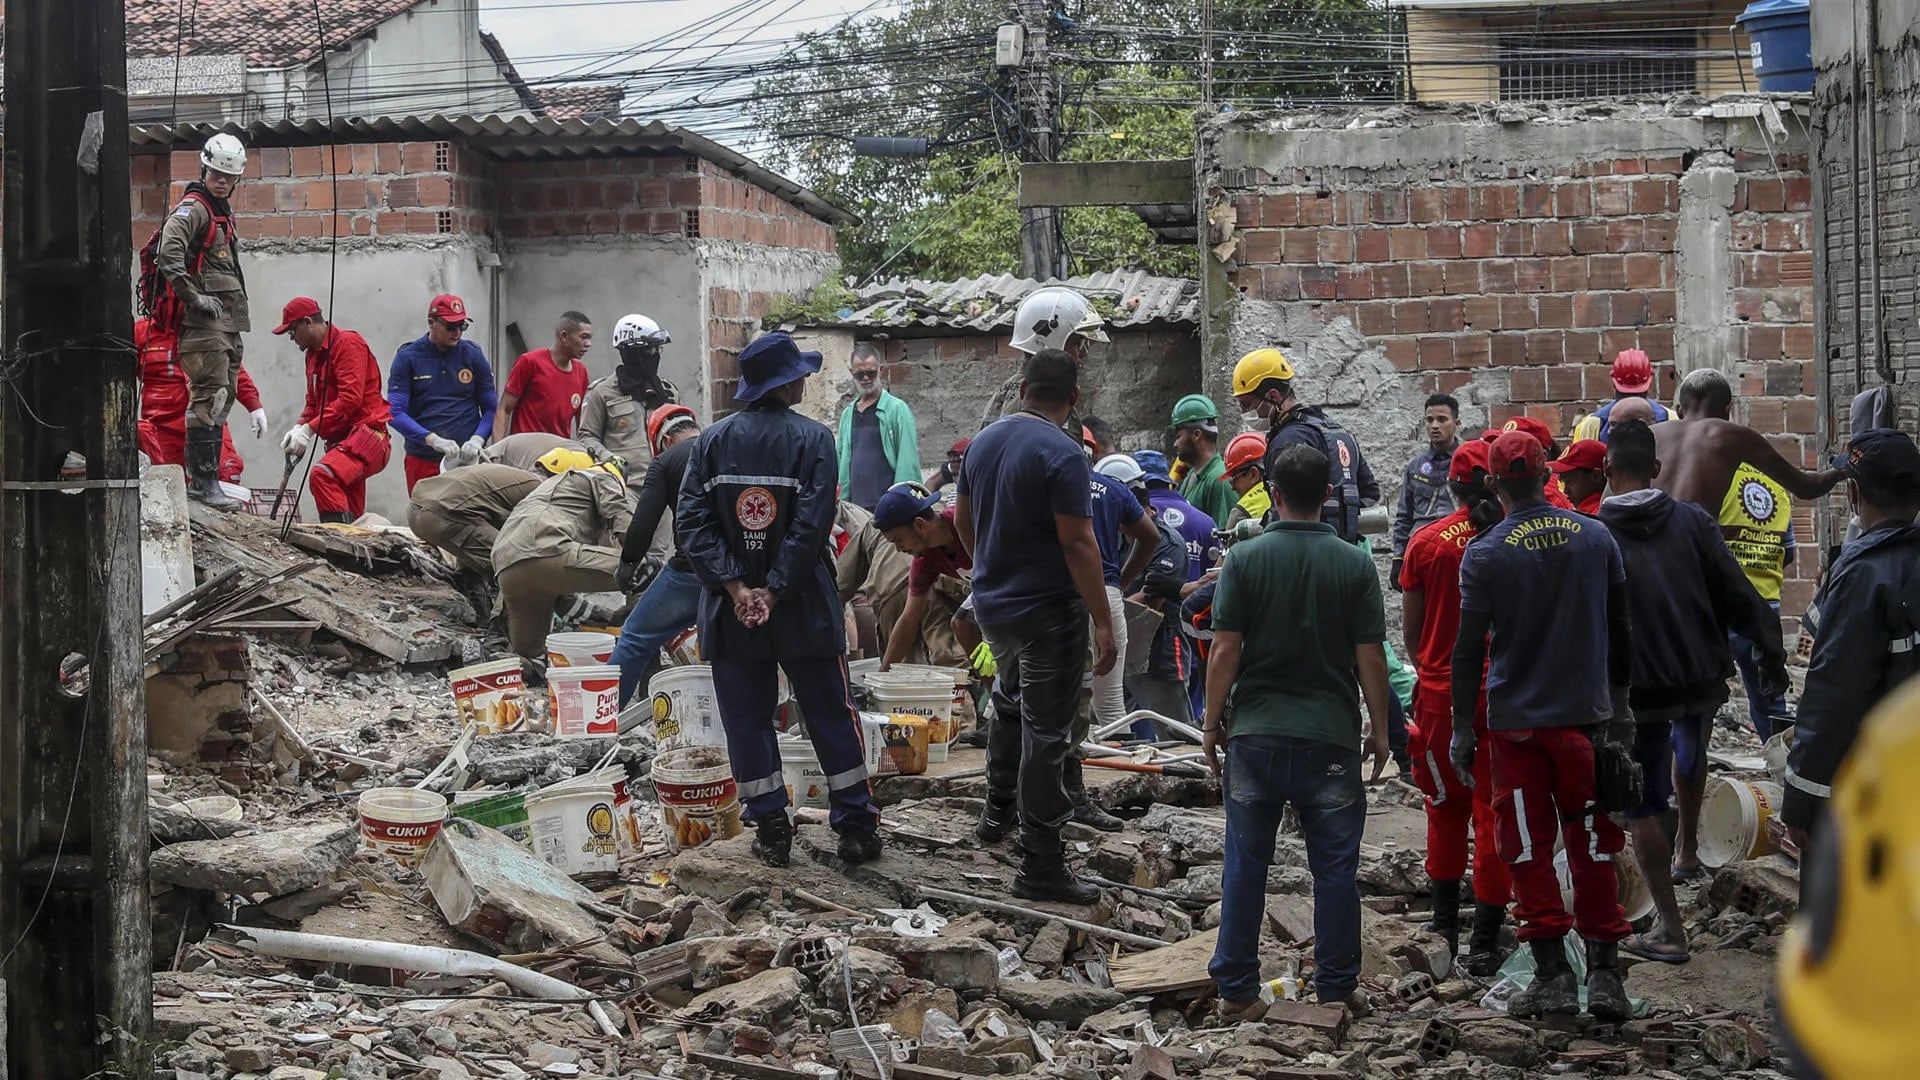 Al menos 2 personas murieron y otras 15 continúan atrapadas bajo los escombros o desaparecidas después de que un edificio residencial se desplomó en la ciudad brasileña de Paulista (noreste), informaron este viernes los bomberos (EFE/ Carlos Ezequiel Vannoni)
